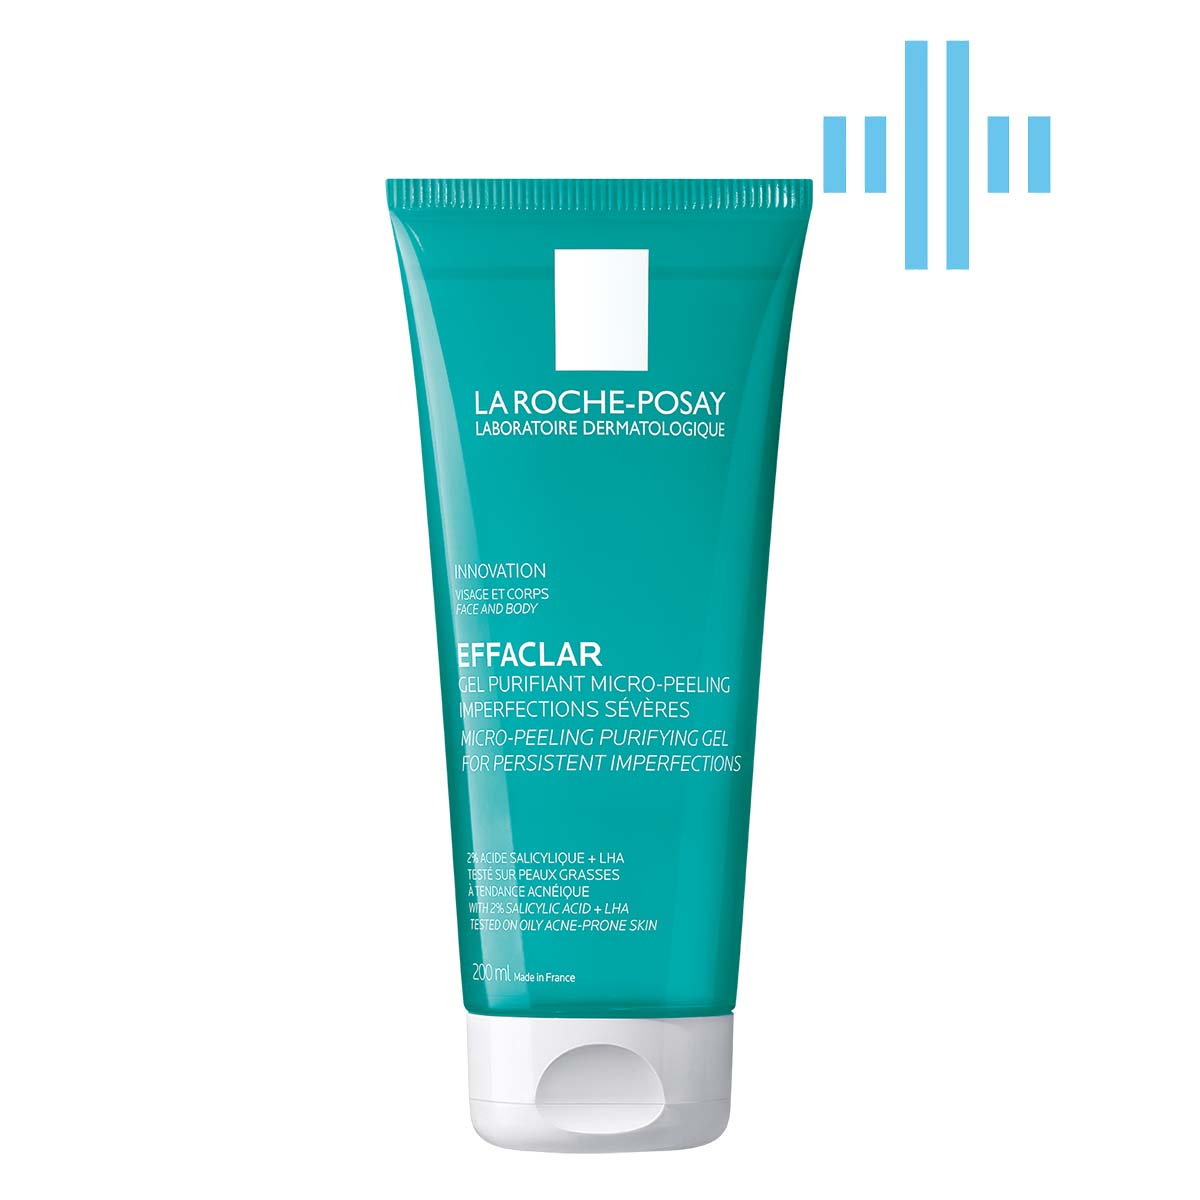 Гель-микропилинг La Roche-Posay Effaclar для очищения проблемной кожи лица и тела, для уменьшения устойчивых недостатков, 200 мл (MB246000) - фото 1